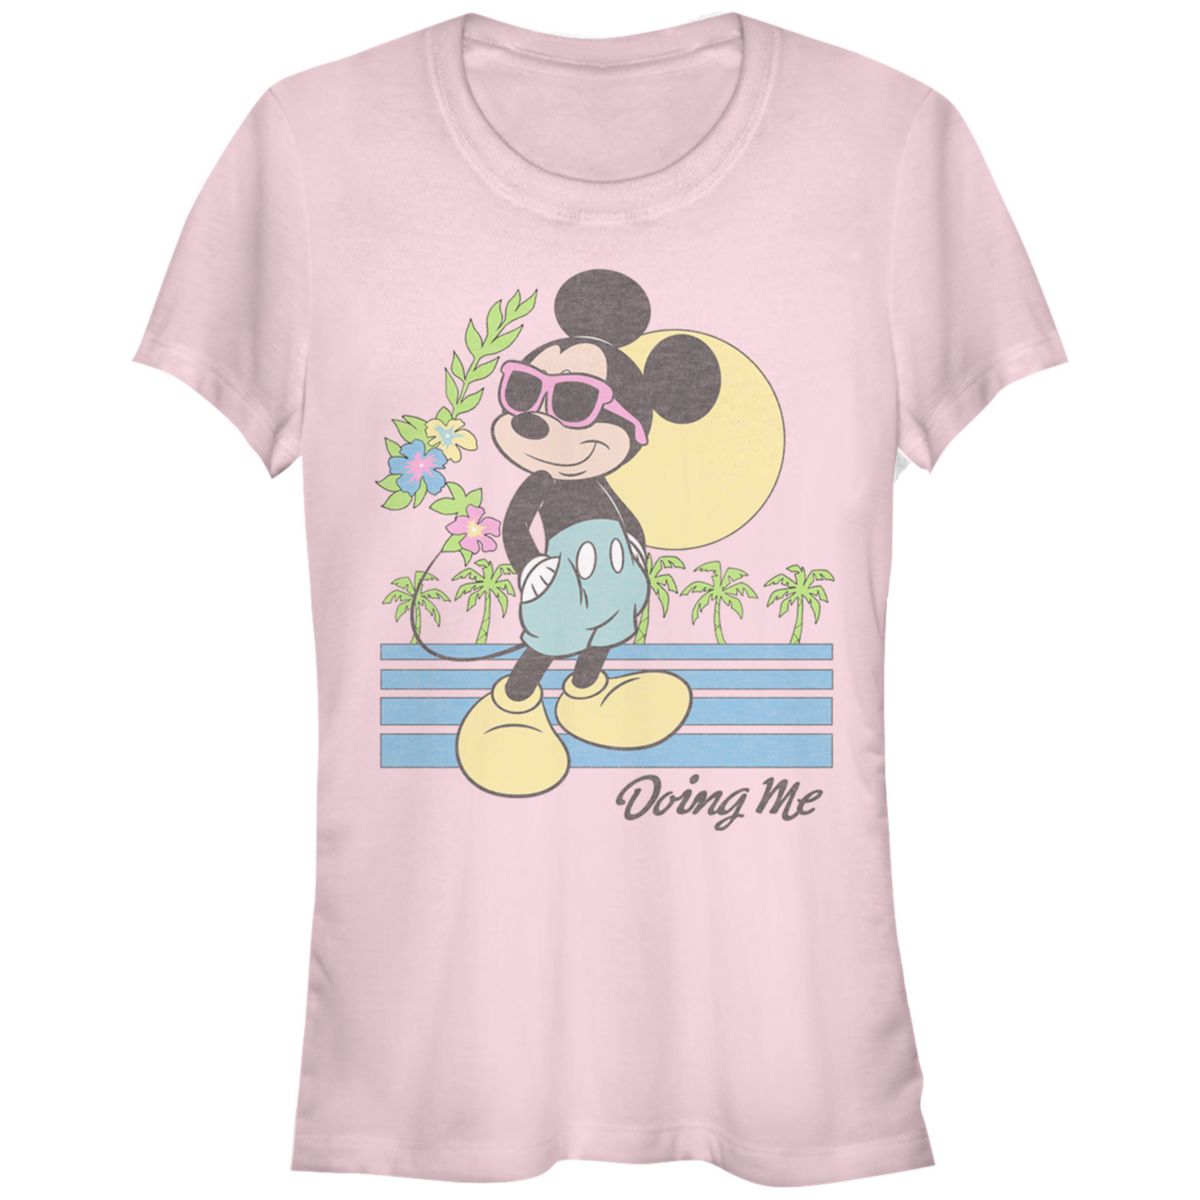 Детская пляжная футболка с рисунком Микки Мауса Disney's Cool Vibes Disney